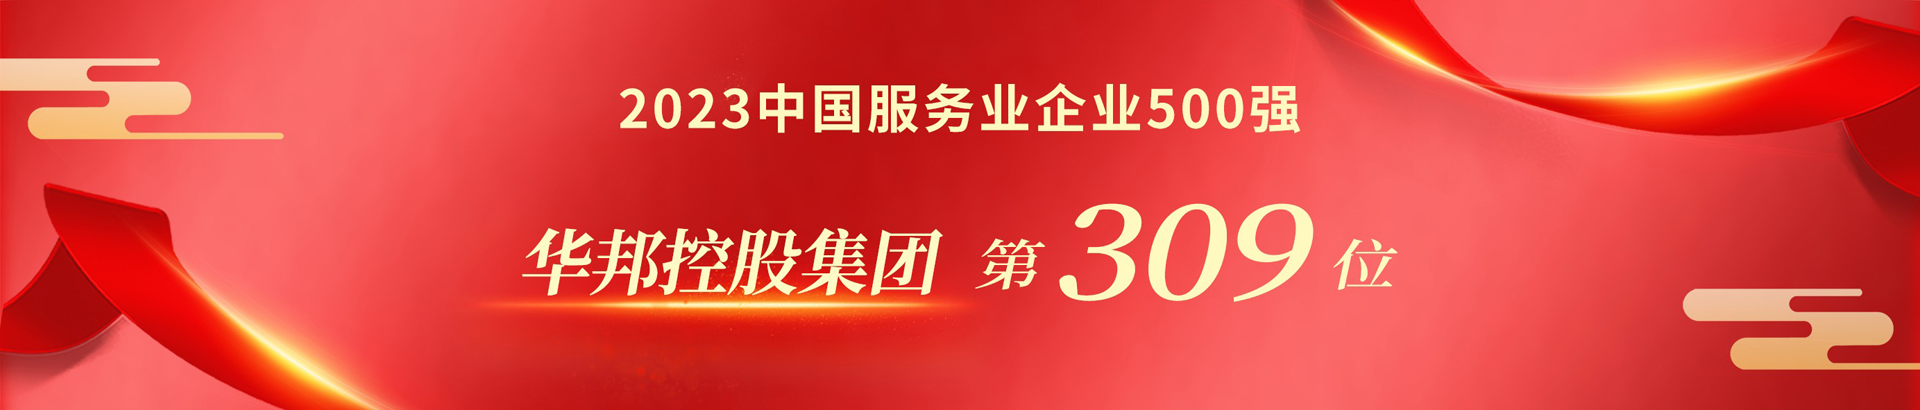 z6com尊龙凯时控股核心业务展示 